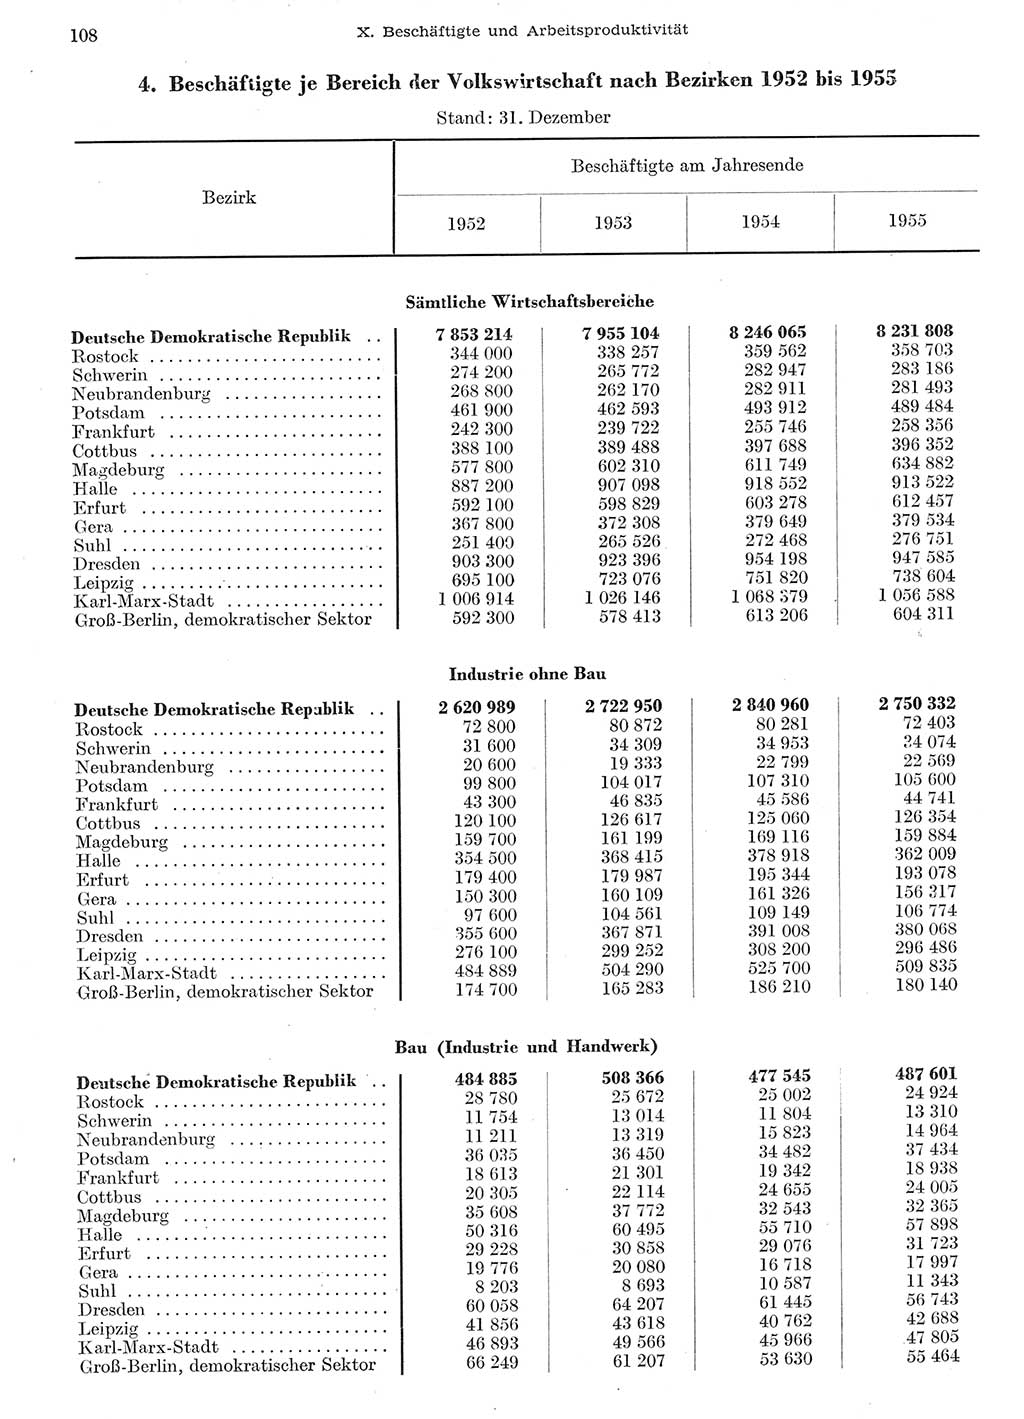 Statistisches Jahrbuch der Deutschen Demokratischen Republik (DDR) 1955, Seite 108 (Stat. Jb. DDR 1955, S. 108)